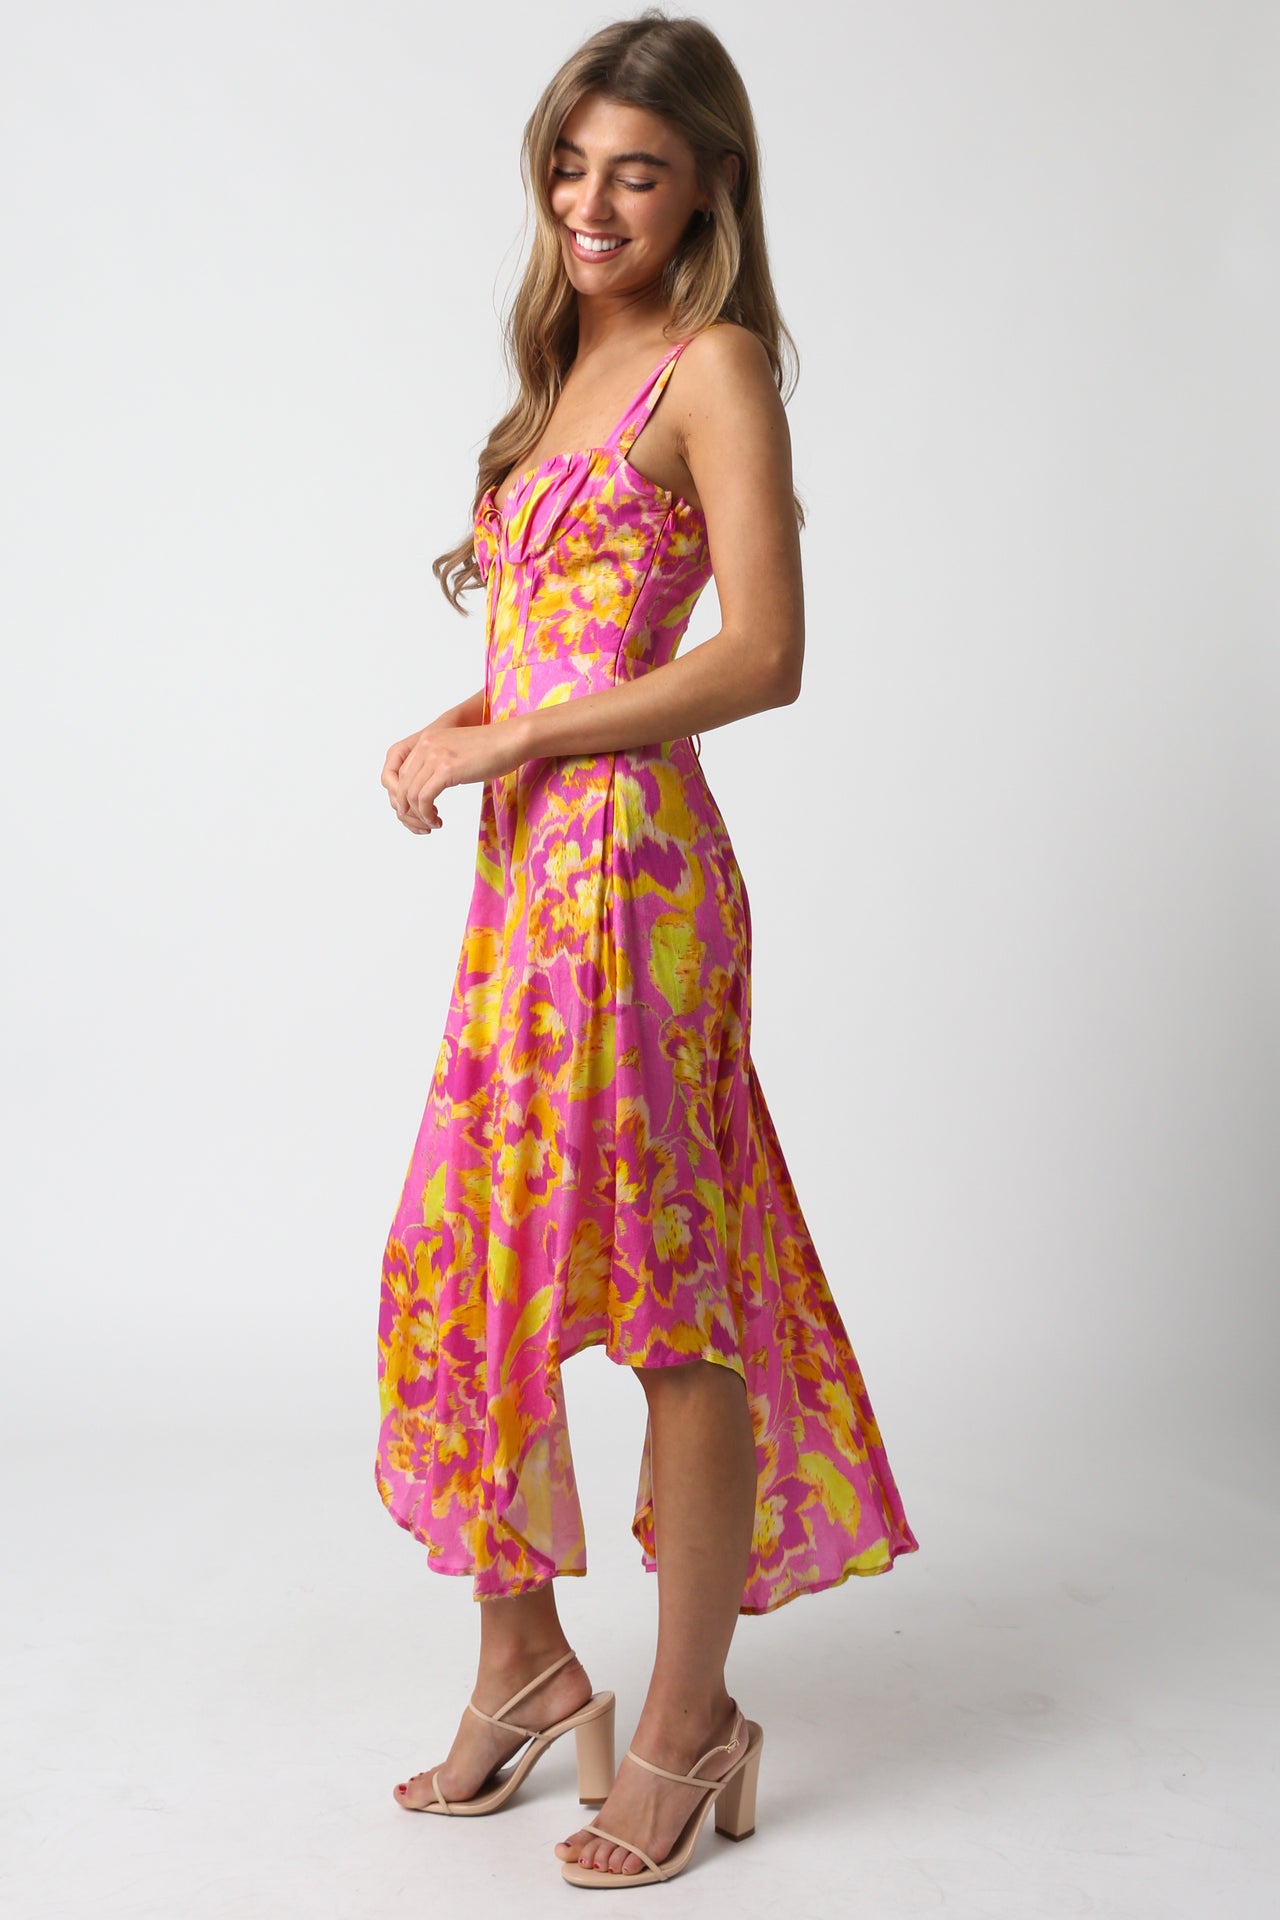 Floral Sunset Mini Dress Pink, Mini Dress by Olivaceous | LIT Boutique